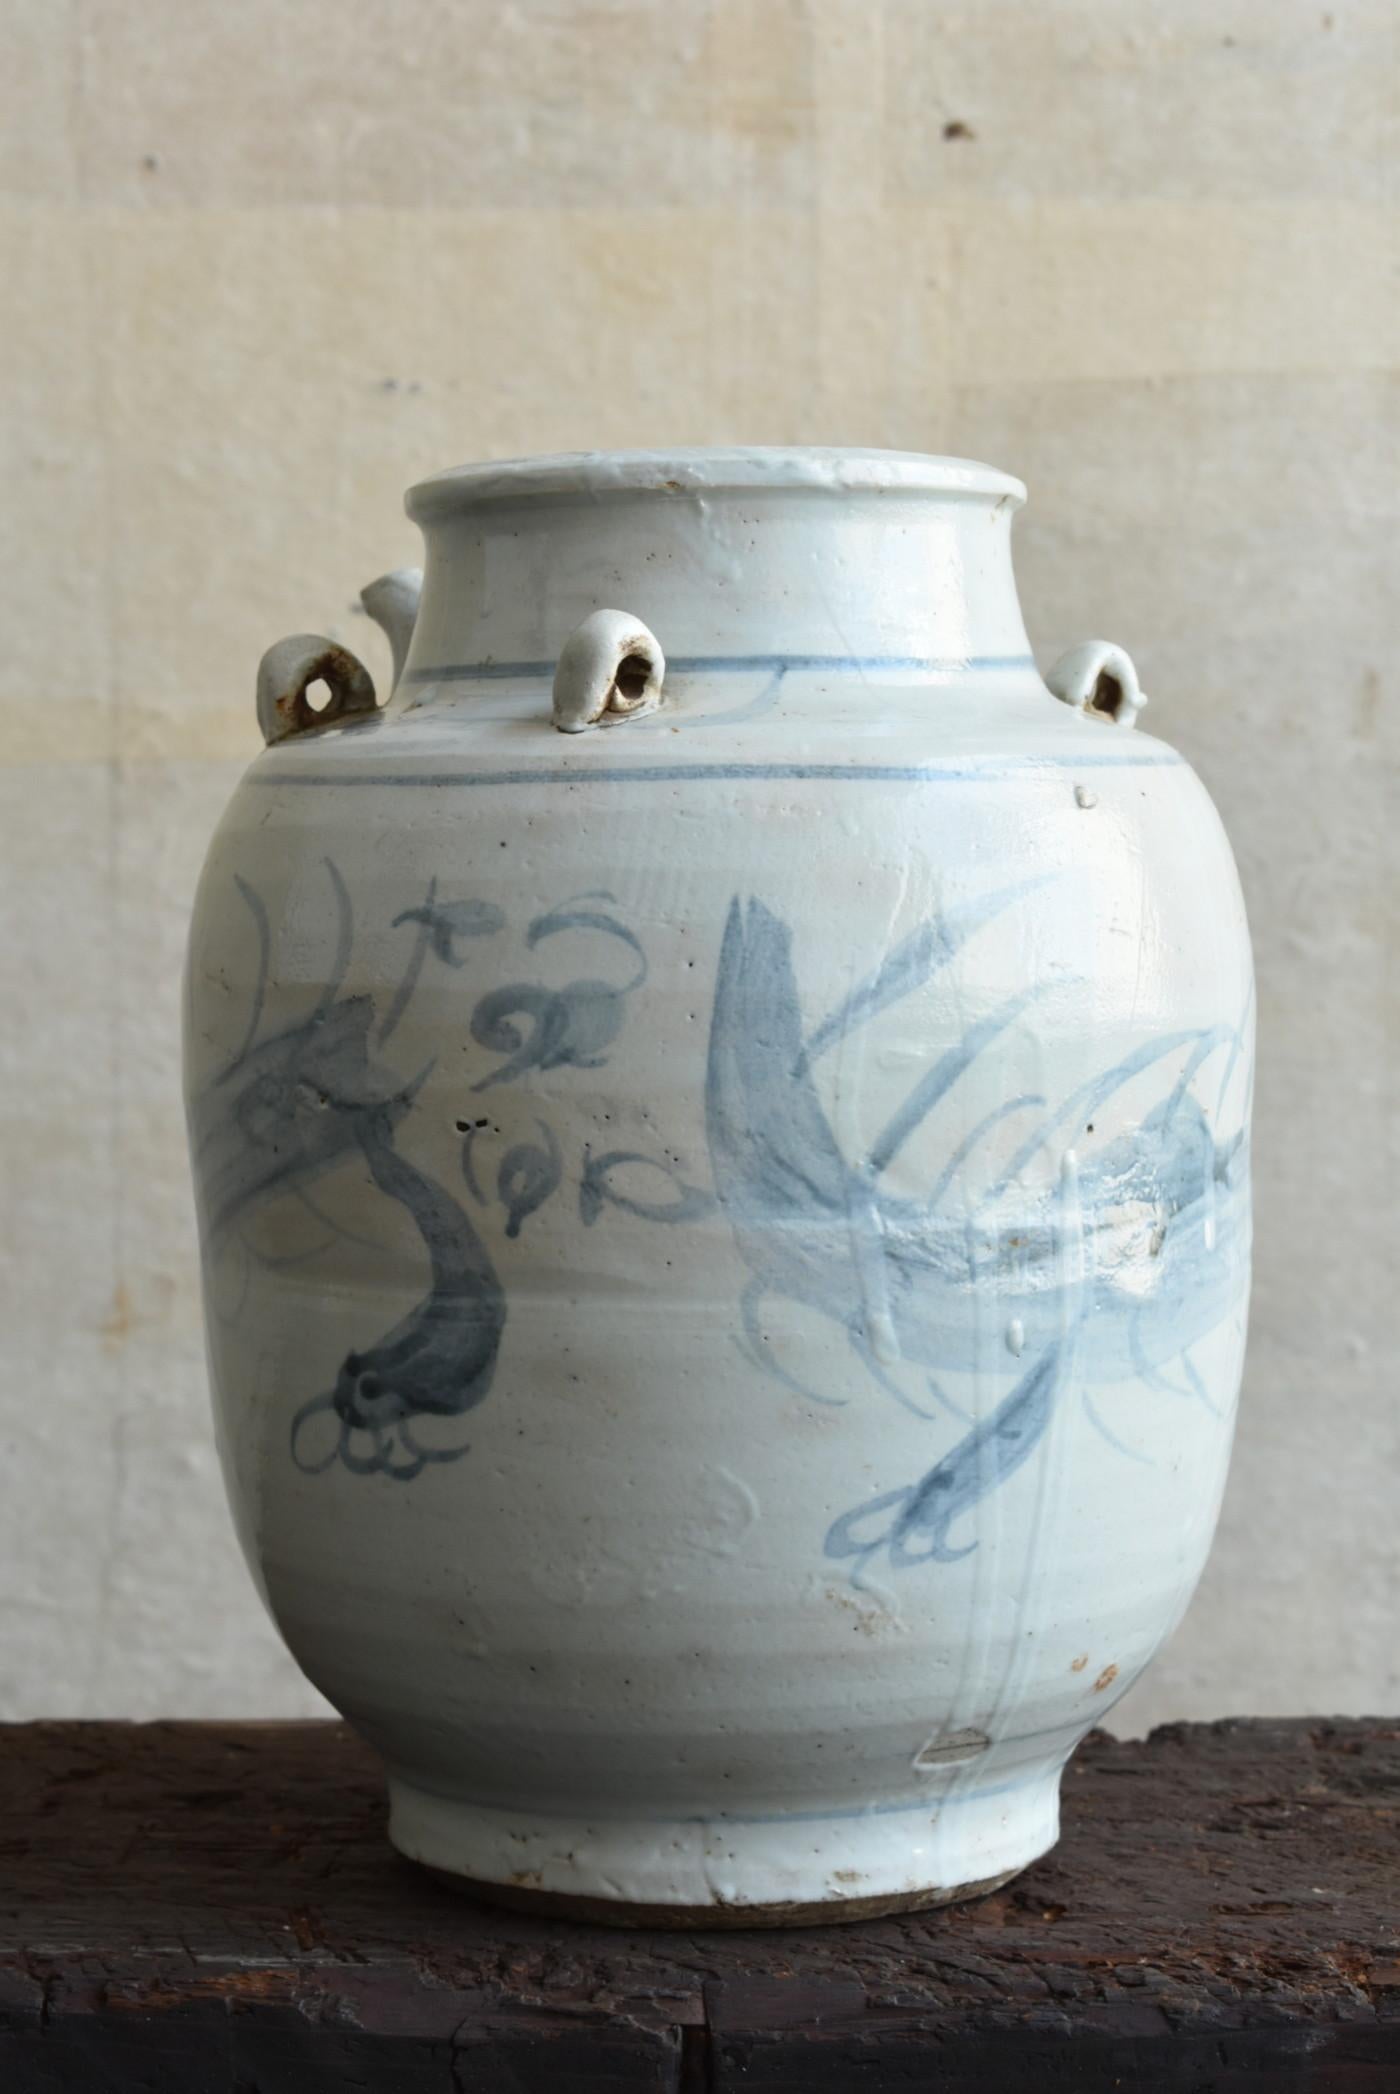 Dies ist eine weiße Porzellanvase aus der späten Qing-Dynastie in China.
Hergestellt um das 19. Jahrhundert.
Er hat eine interessante Form mit vier Ohren und einem Ausguss.

Das auf dem gesamten Gefäß gezeichnete Muster ist ein Drache.
Sie wird mit